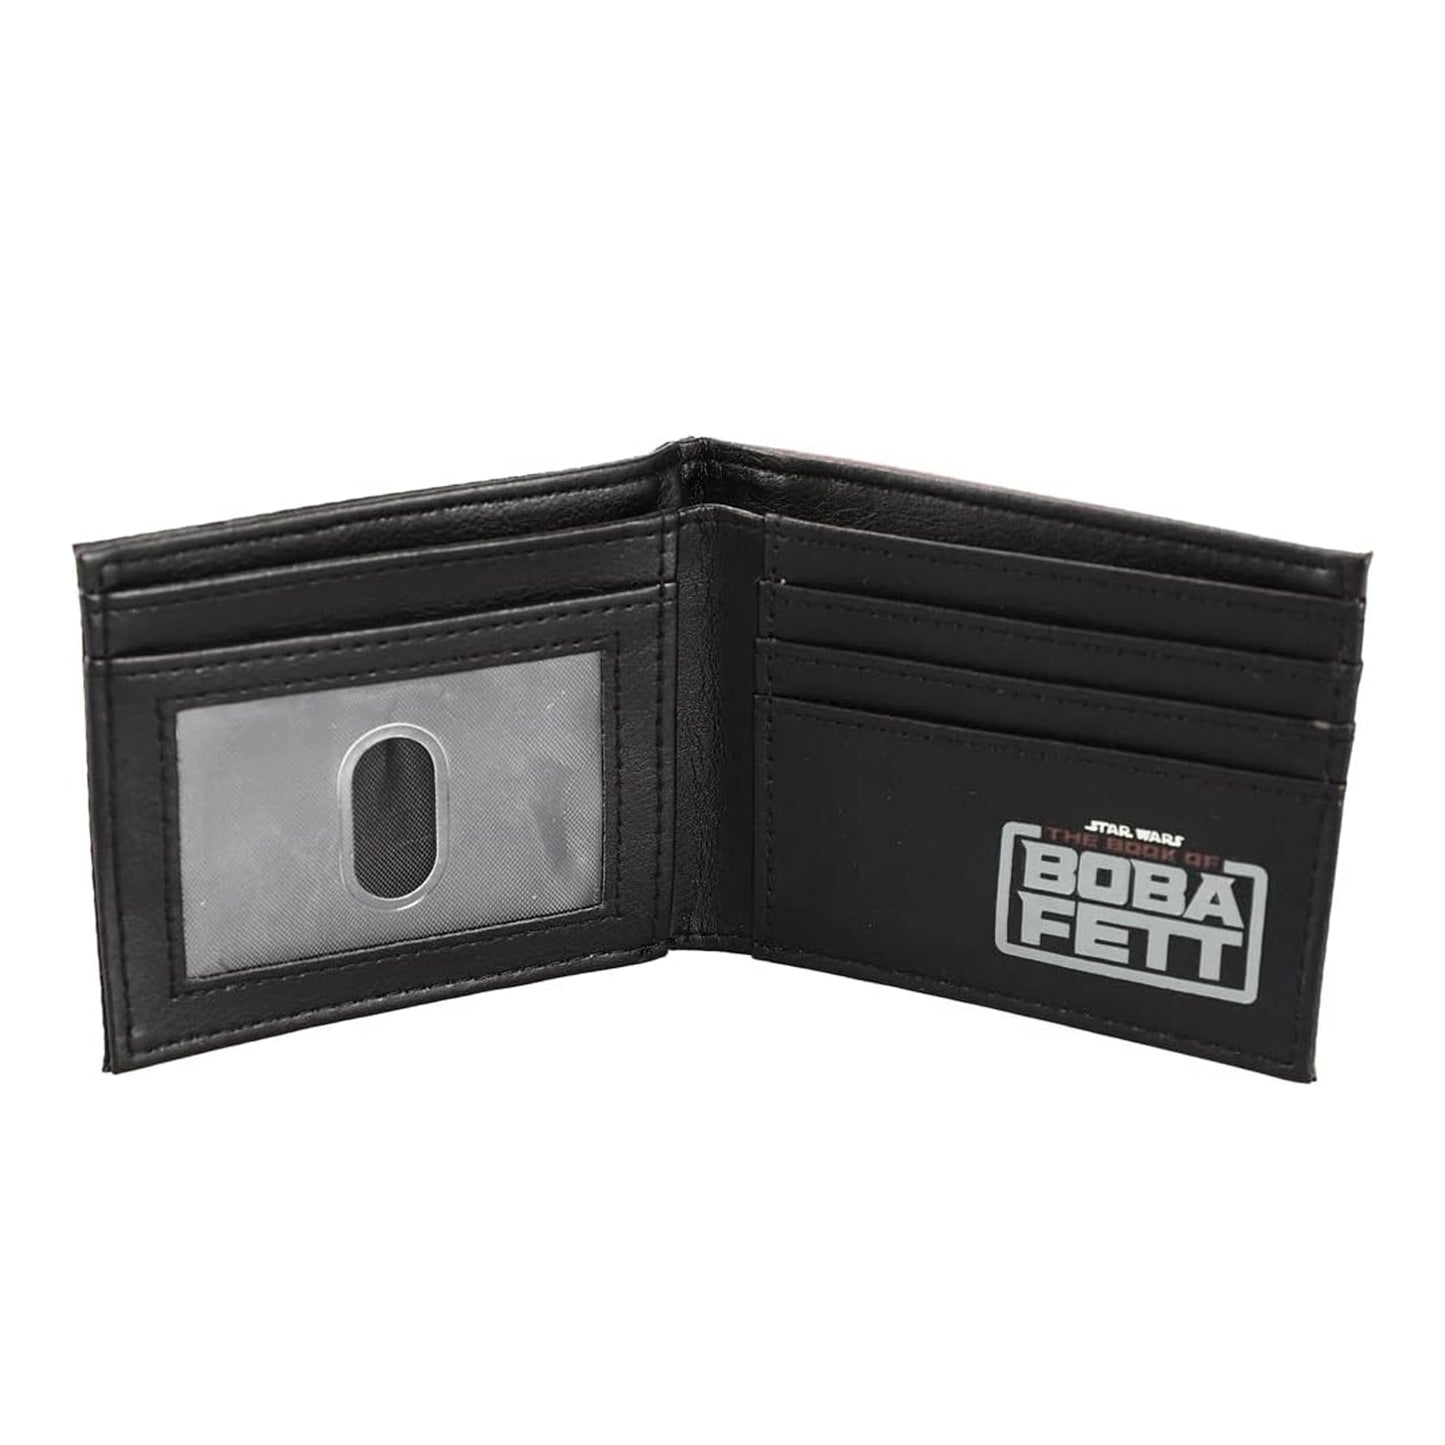 Star Wars Boba Fett Patch Bi-fold Wallet